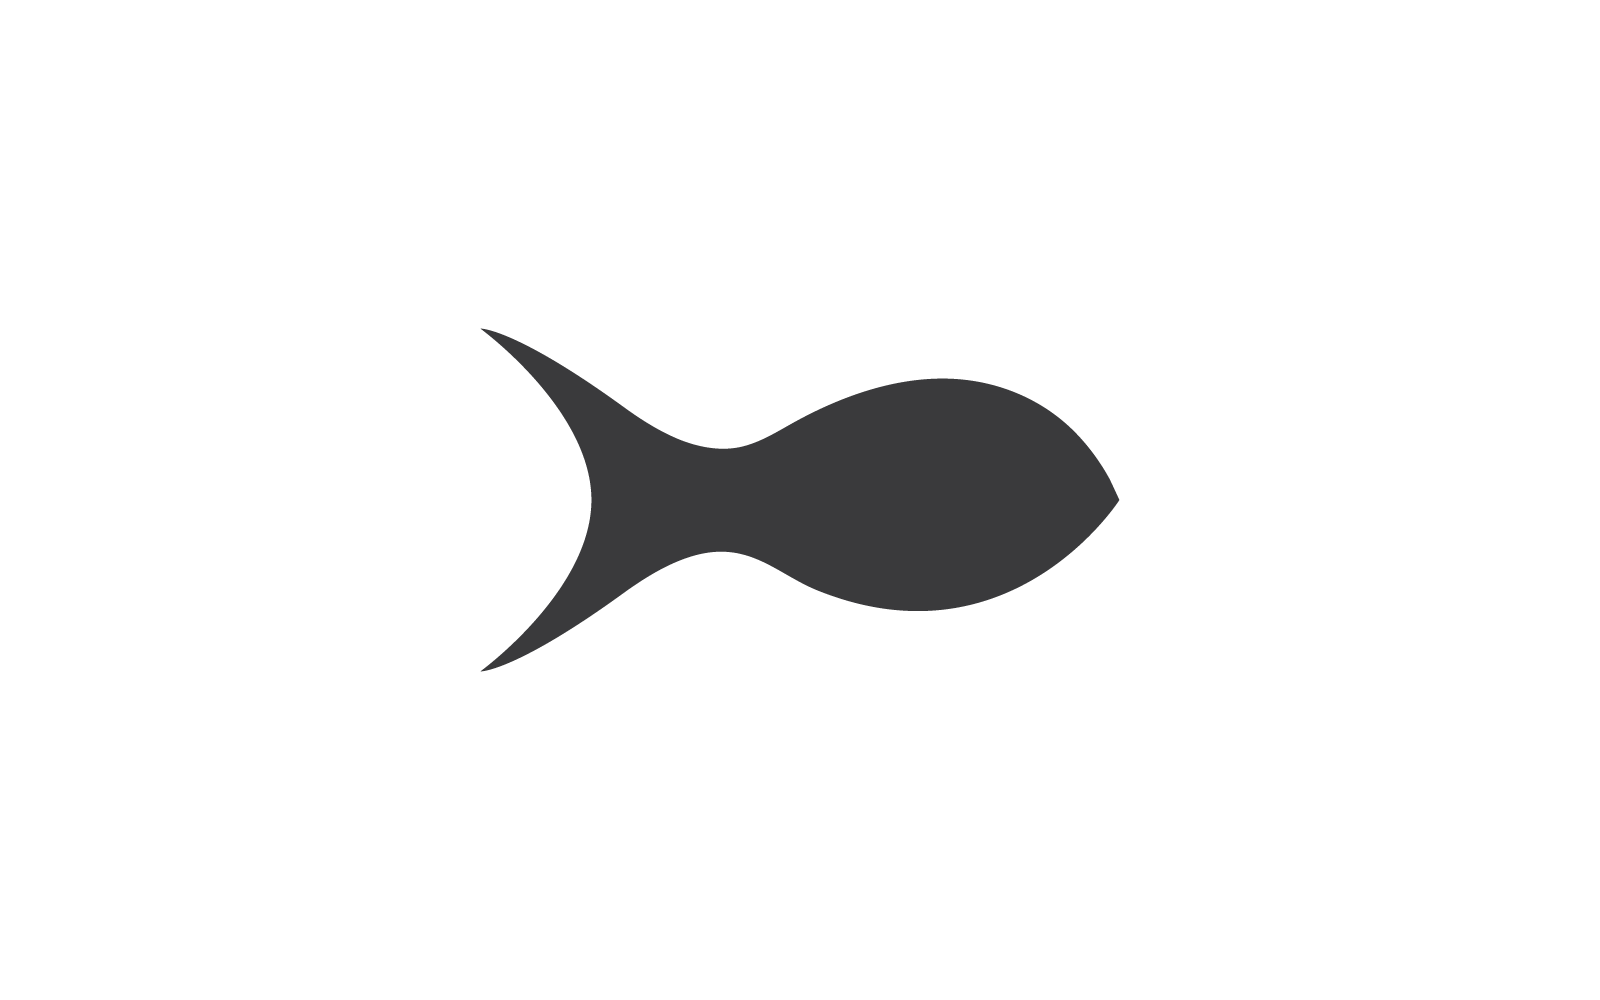 Риба ілюстрація дизайн логотипу значок вектор шаблон